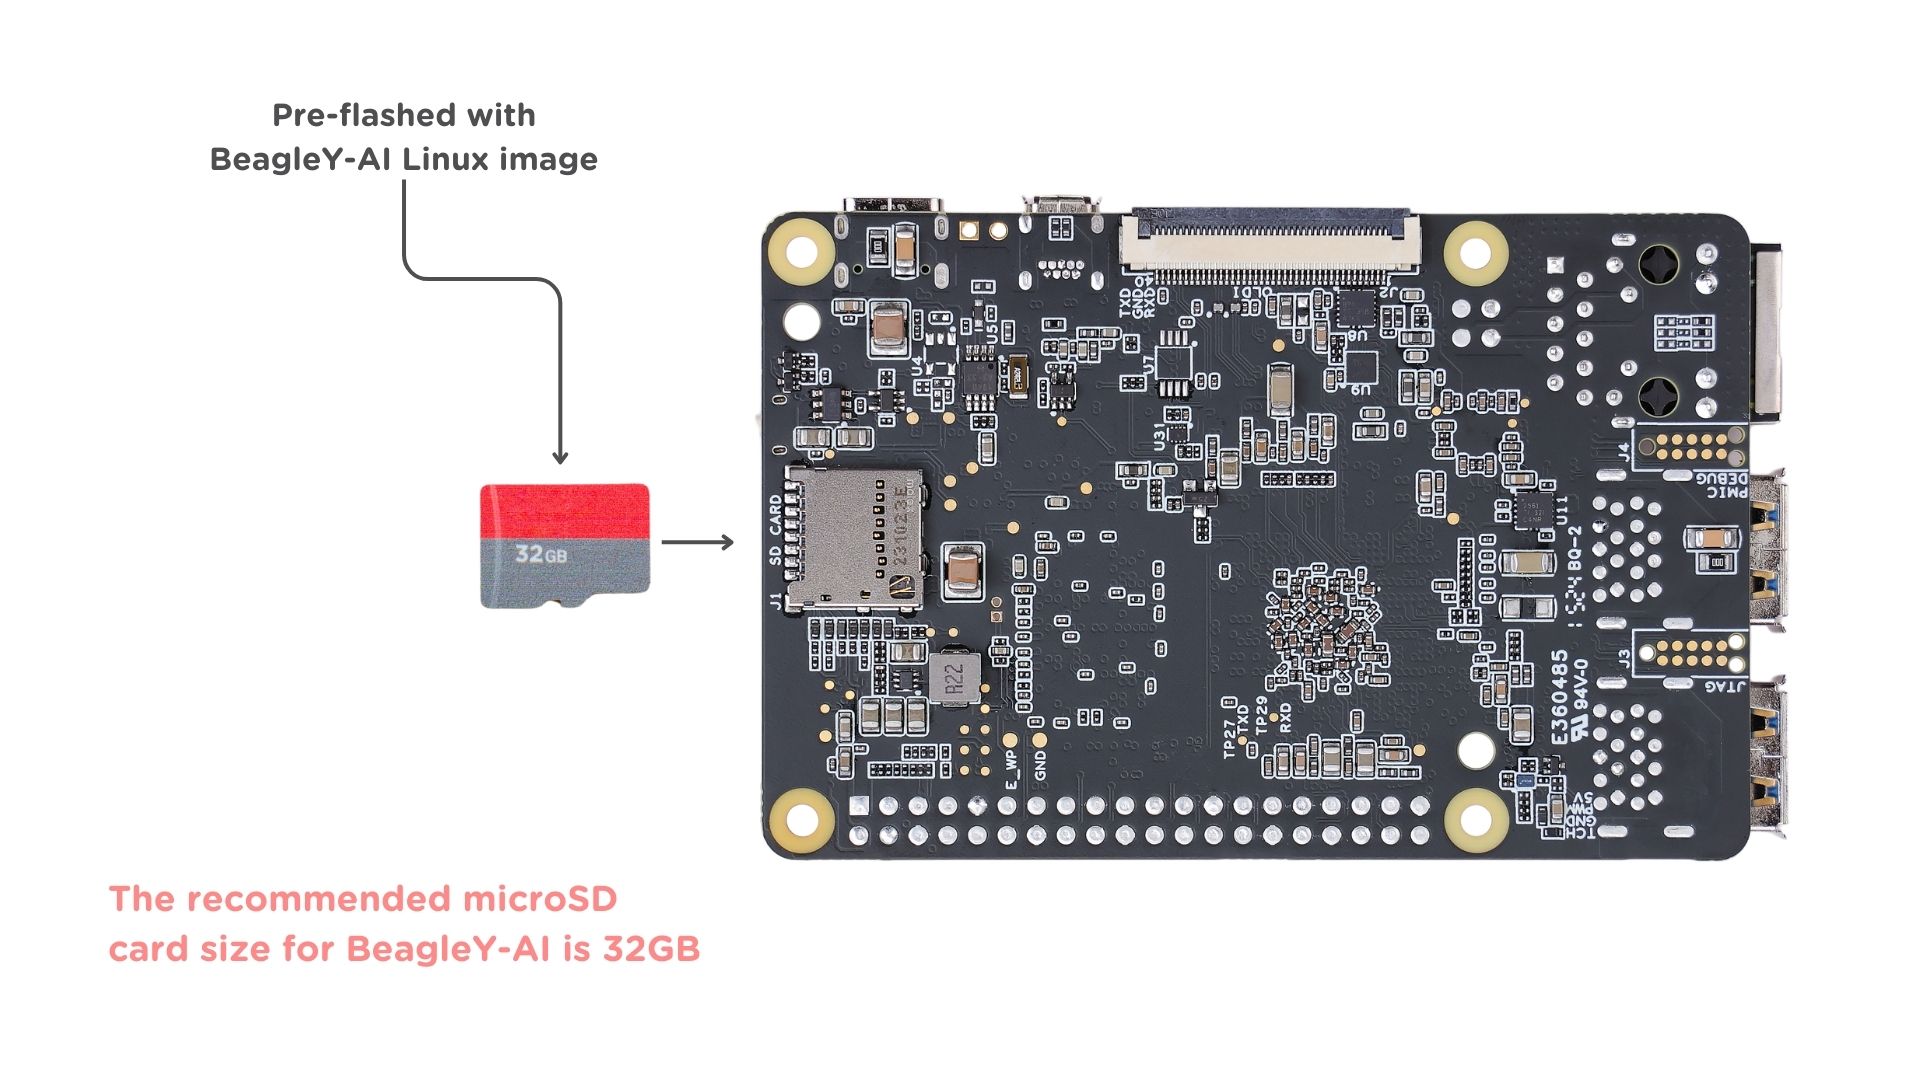 Insert microSD card in BeagleY-AI